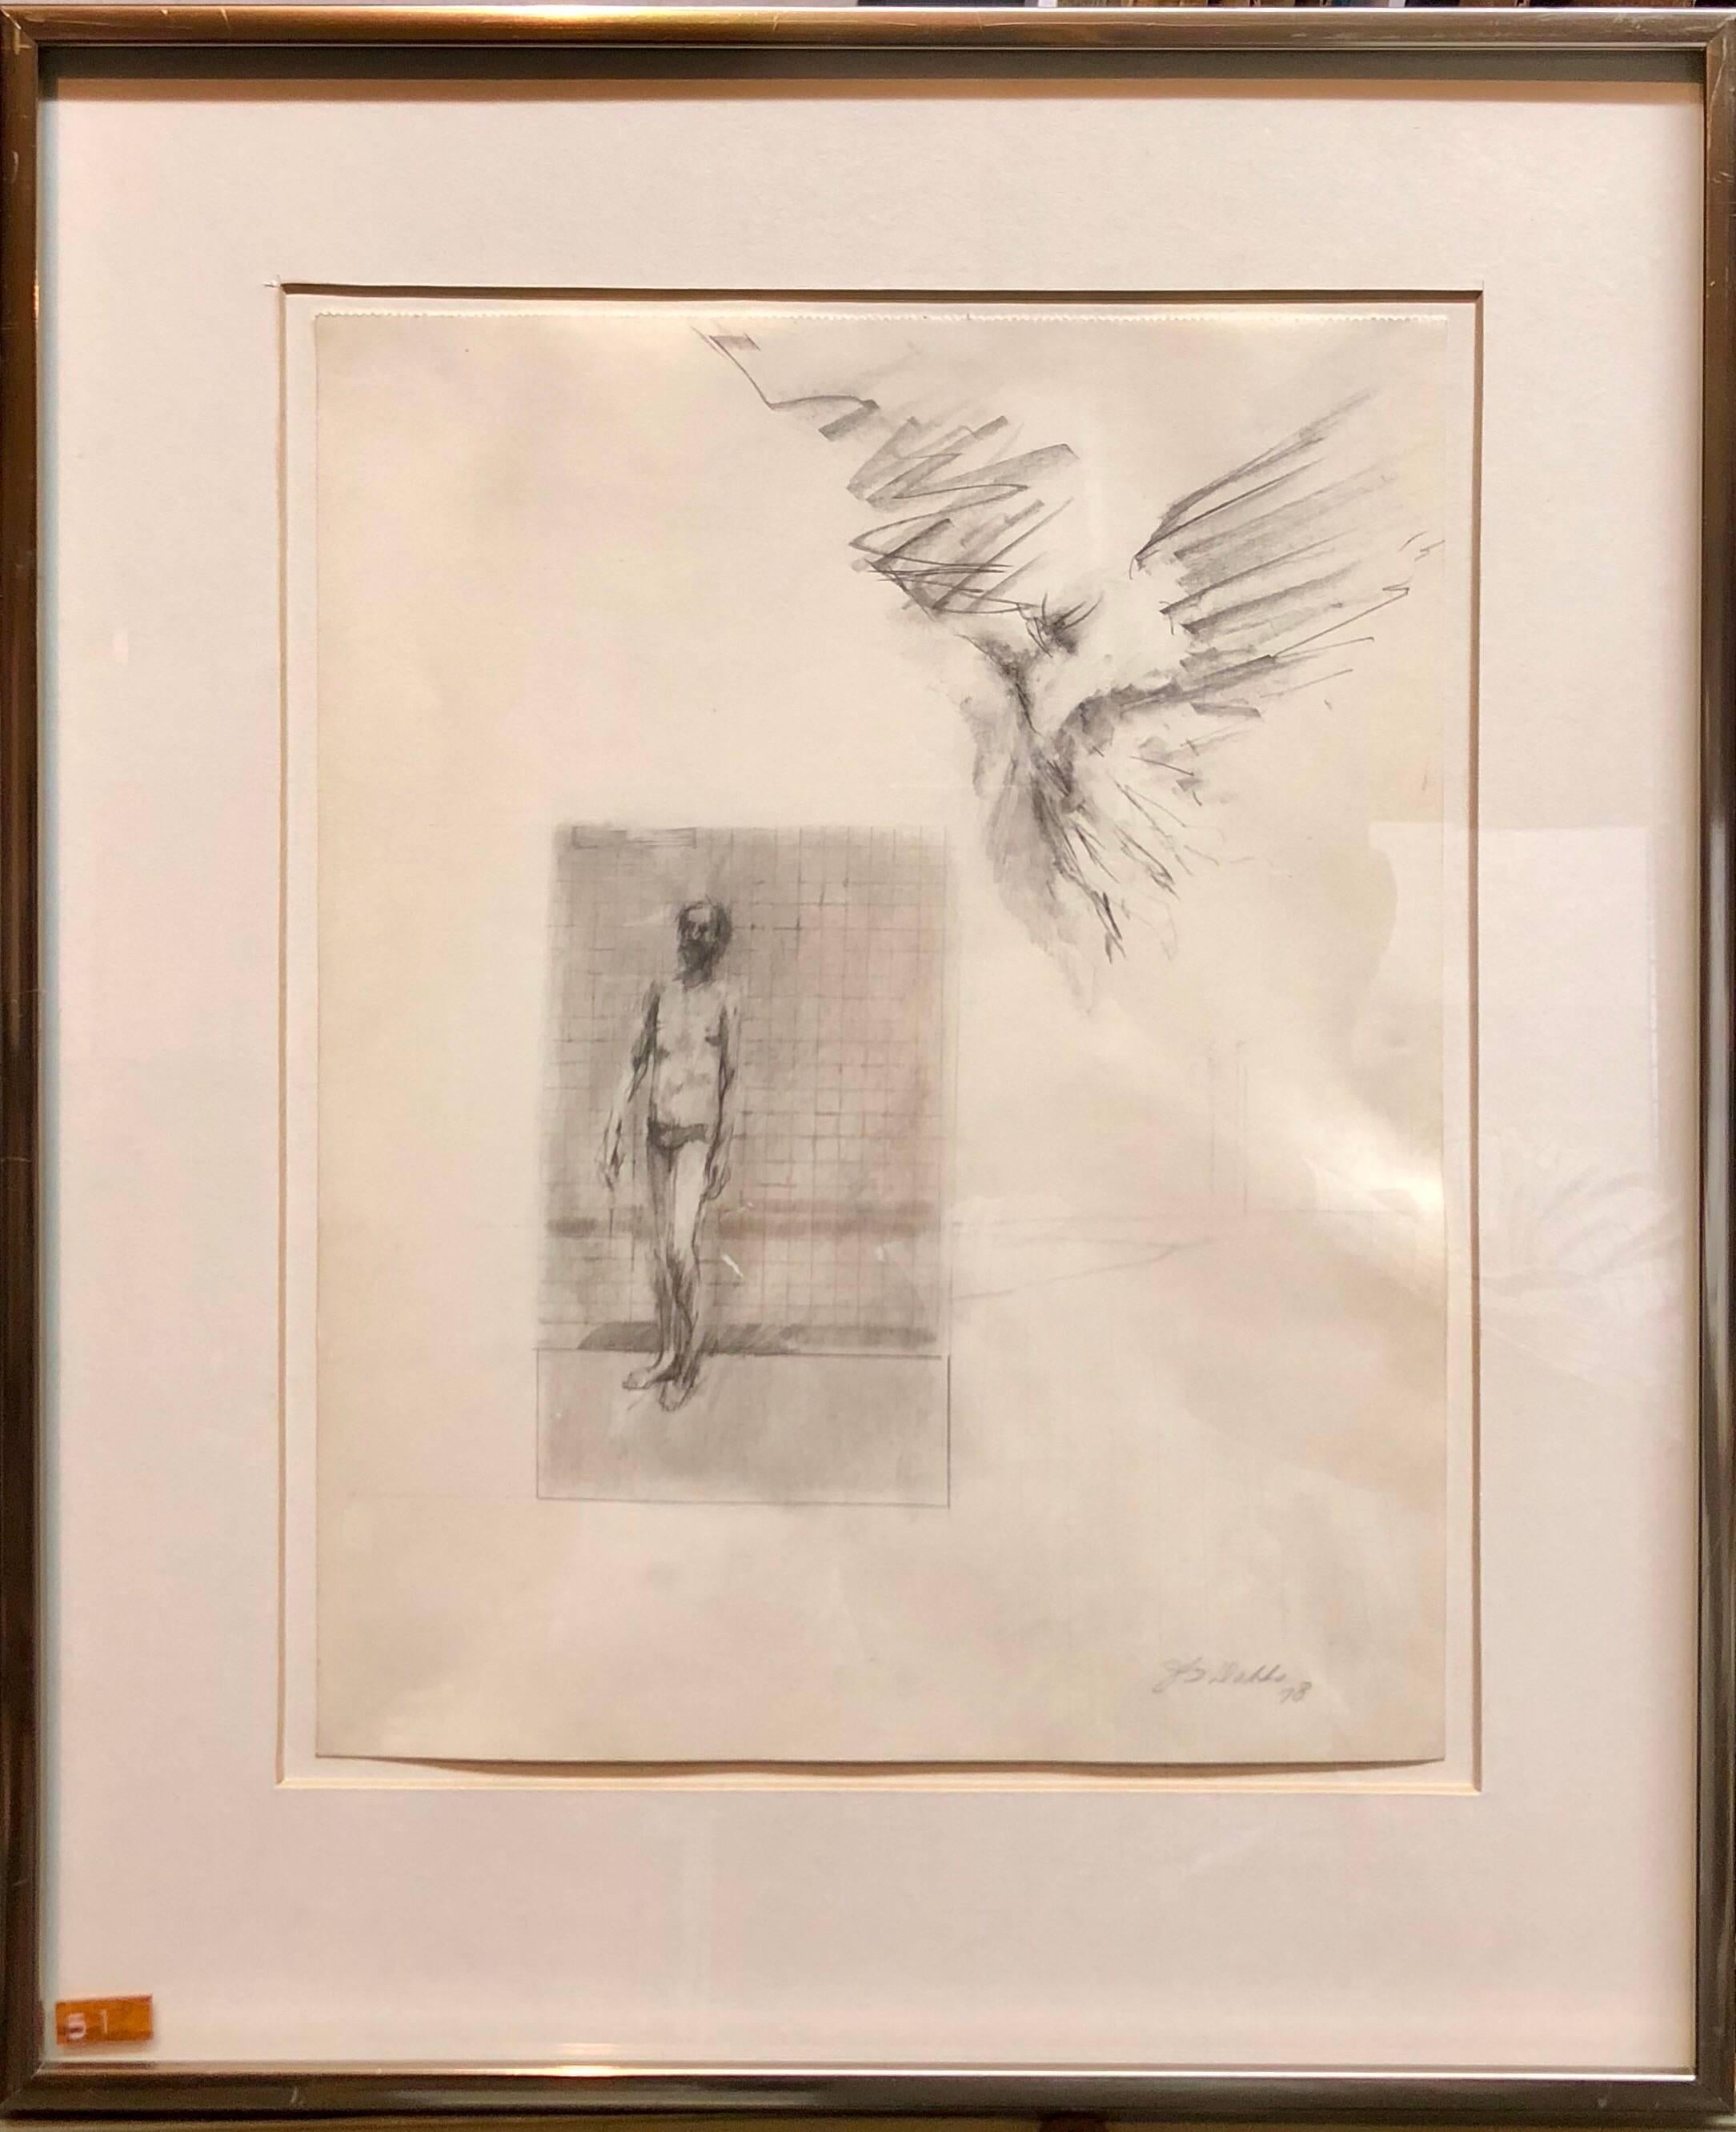 John Dobbs Figurative Art – Abstrakte modernistische Zeichnung eines nackten Mannes mit geflügelter Figur, Engel